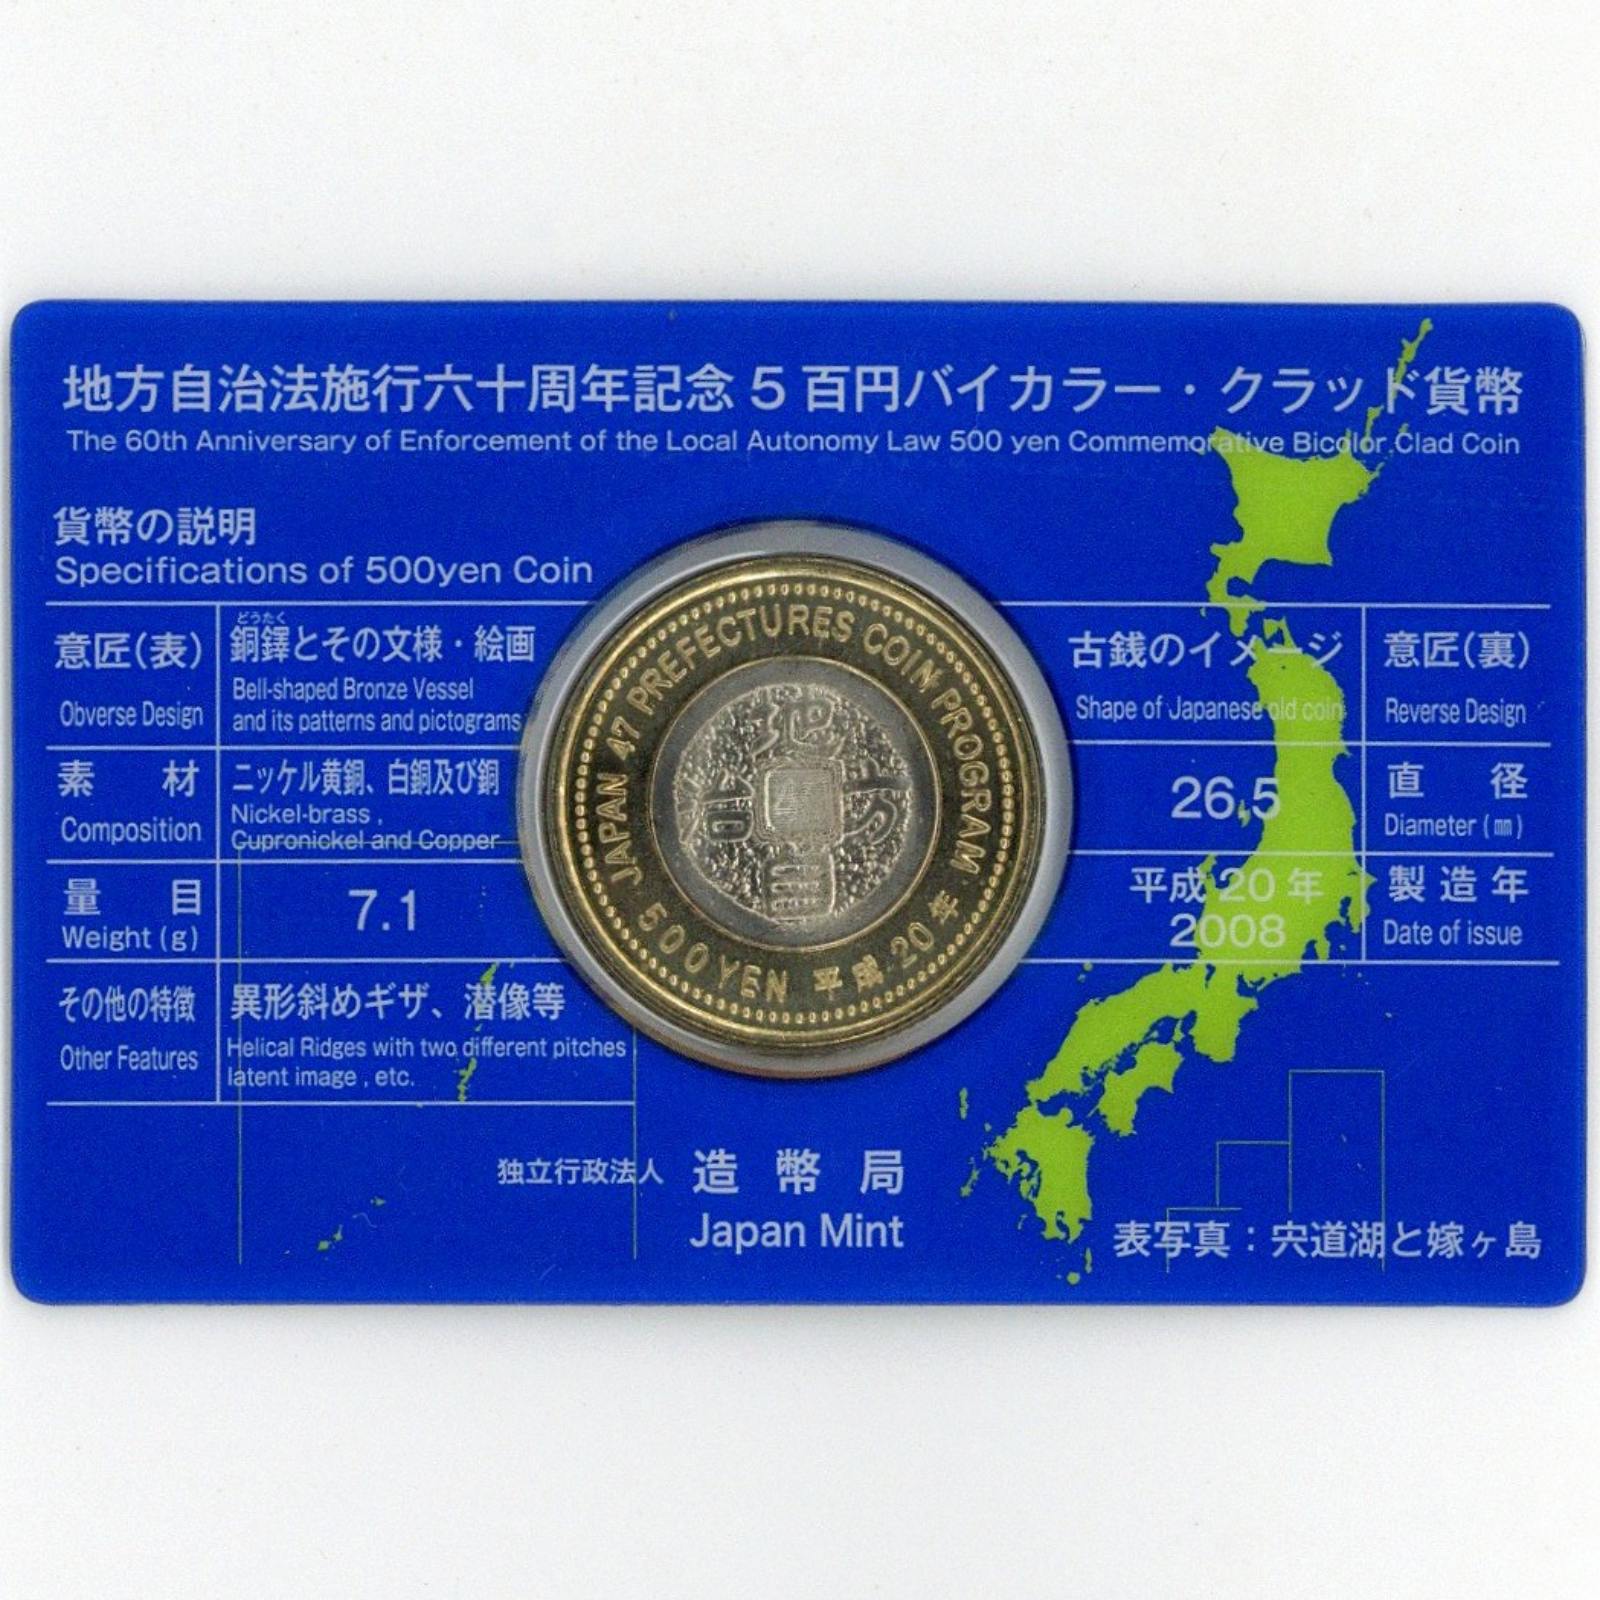 地方自治 周年記念円バイカラー・クラッド貨幣カード 島根県